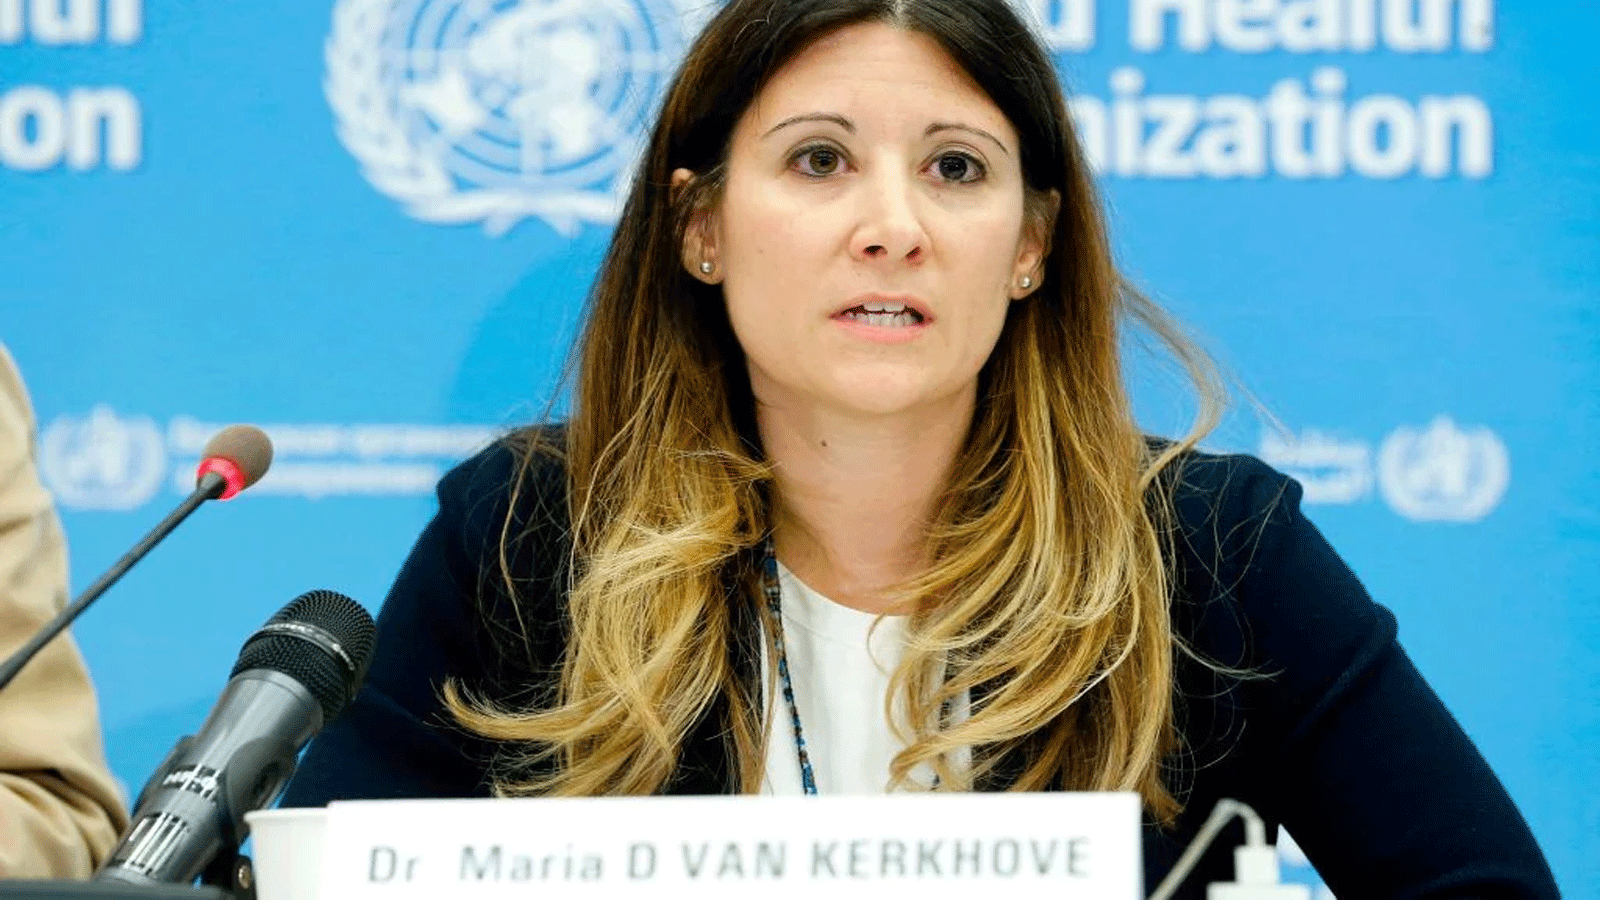 ماريا فان كيرخوف رئيسة الفريق التقني المعني بكوفيد-19 في منظمة الصحة العالمية